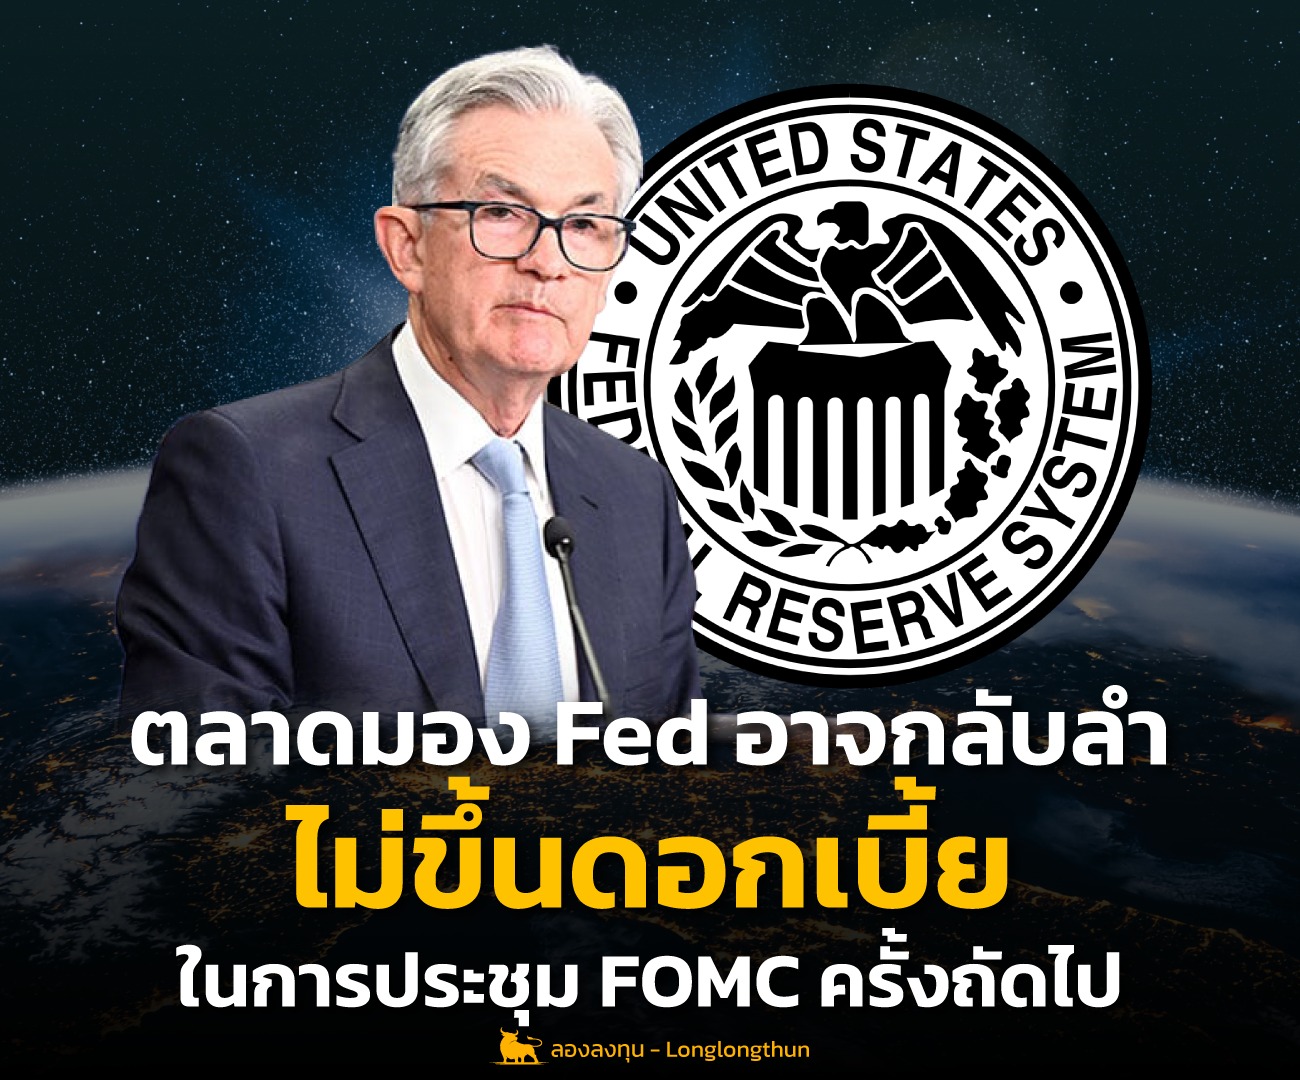 ตลาดมอง Fed อาจกลับลำ ไม่ขึ้นดอกเบี้ยในการประชุม FOMC ครั้งถัดไป